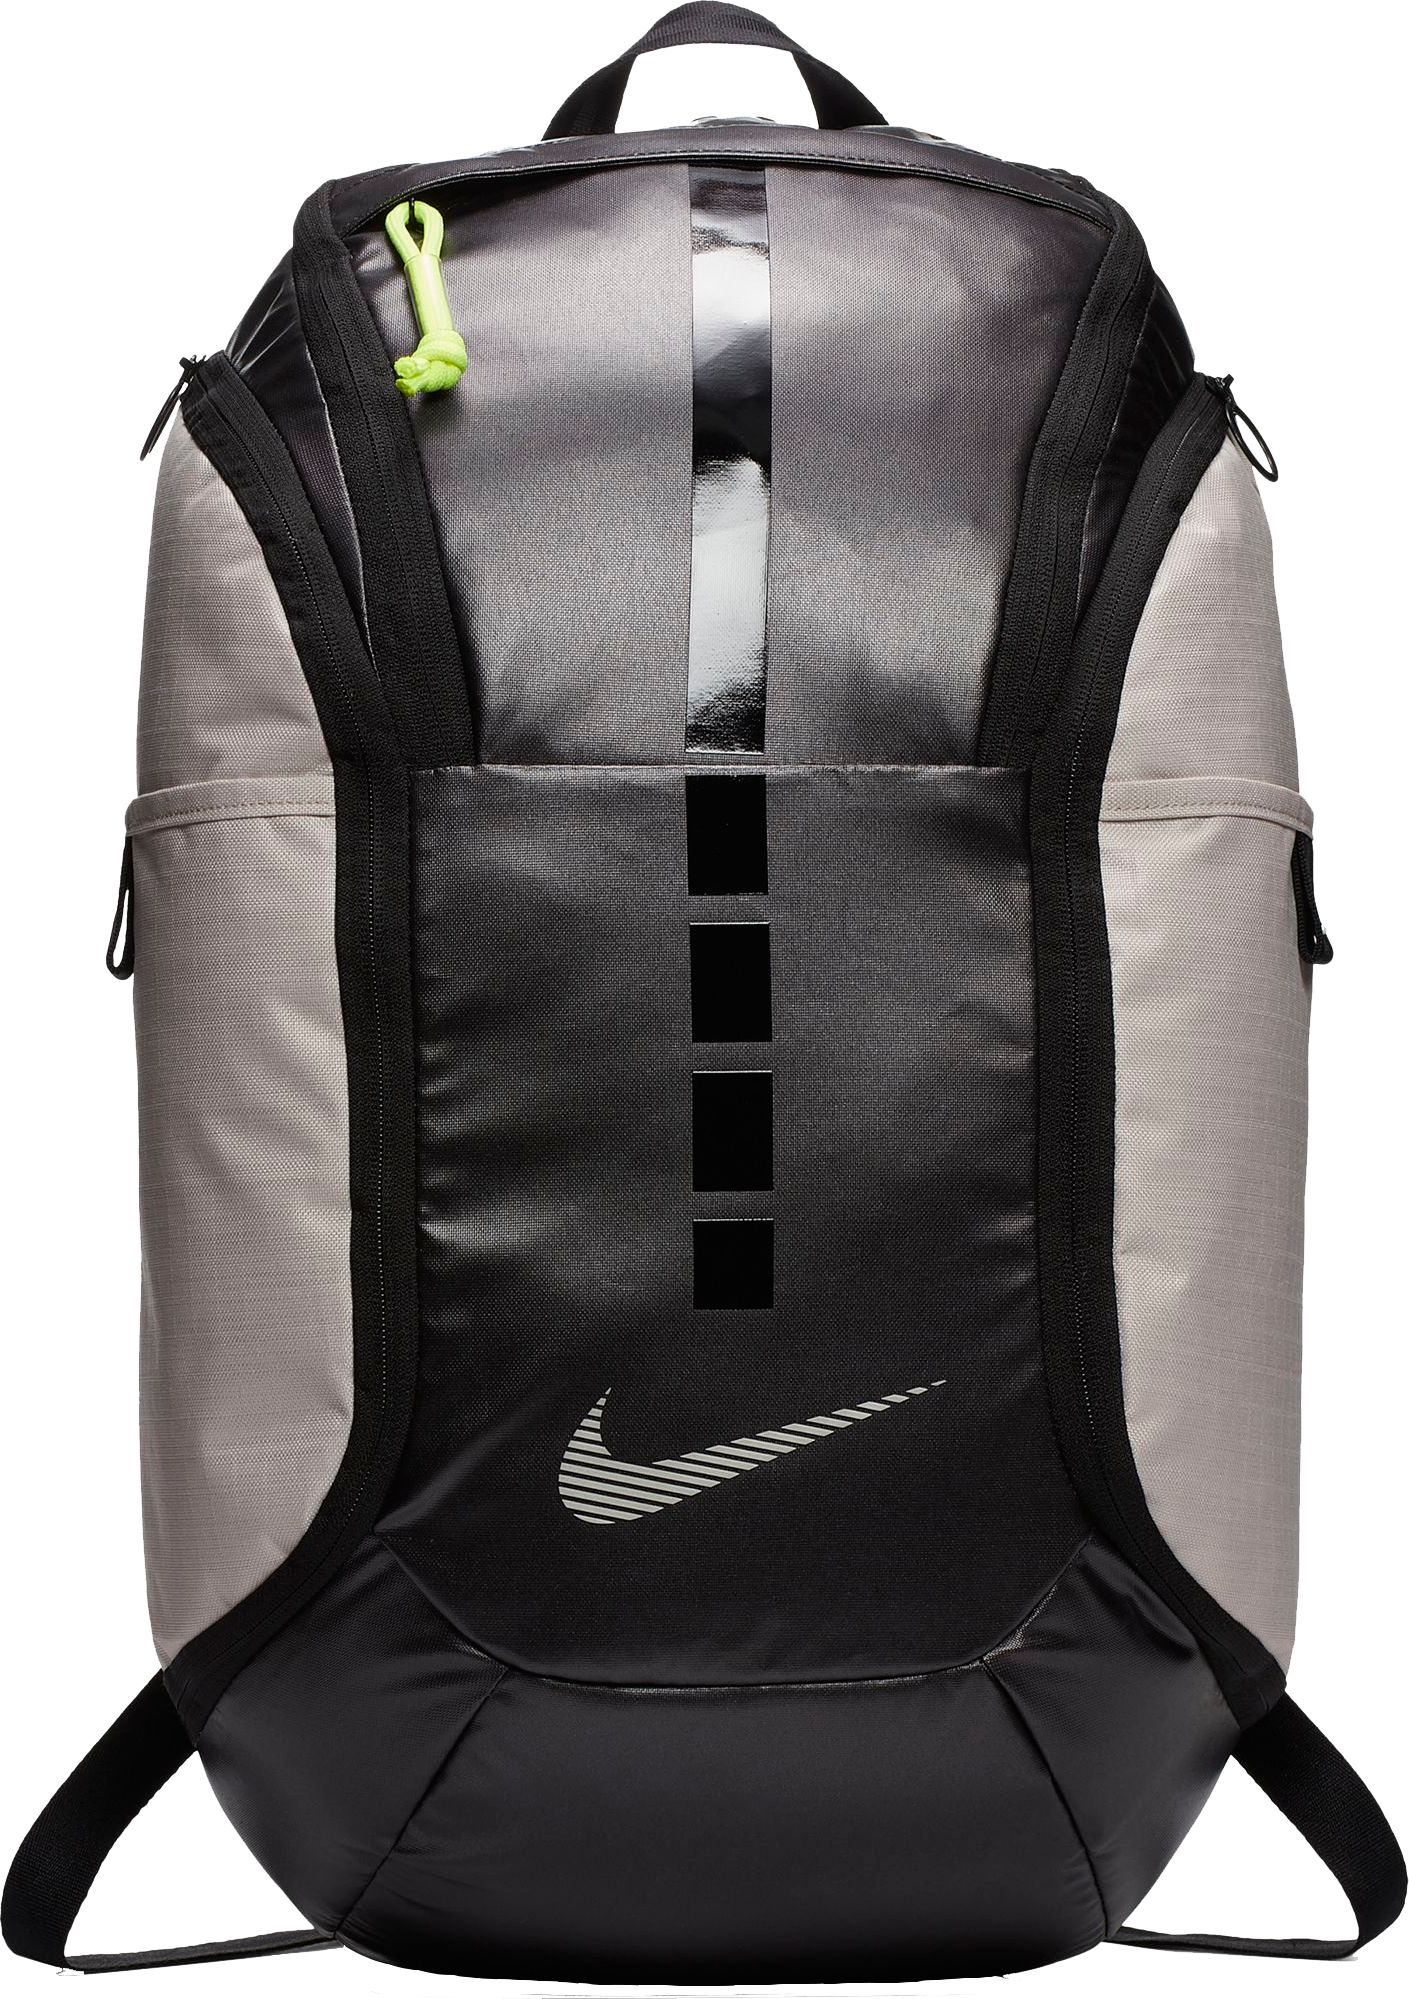 nike elite backpacks on sale